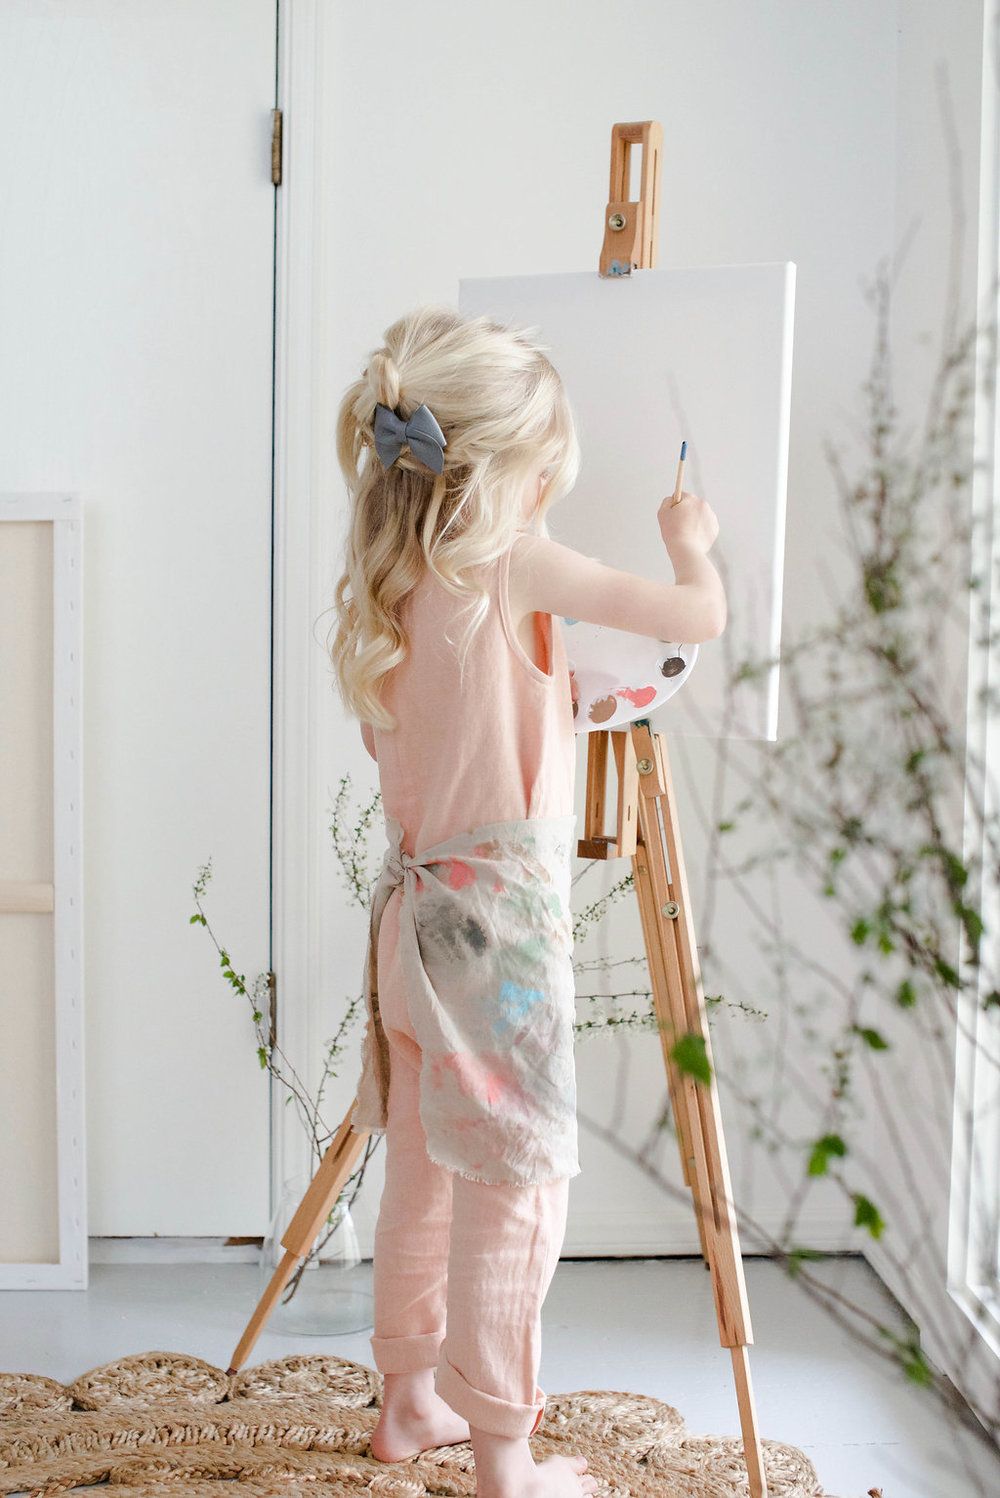 عکس جذاب دختر در حال نقاشی